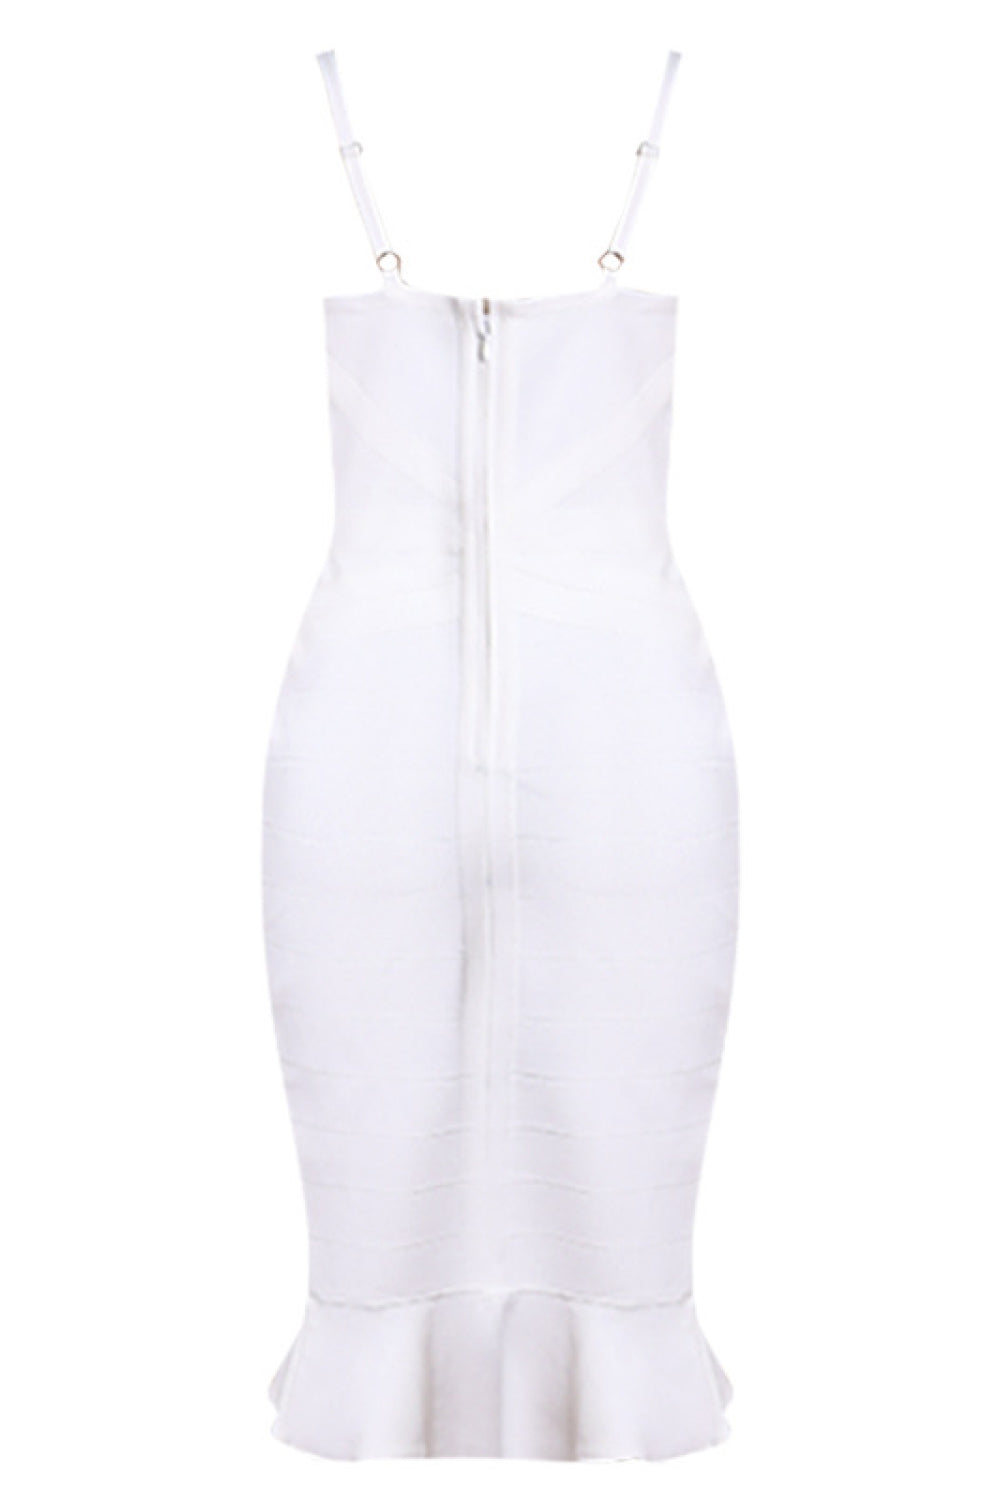 Spaghetti Strap Fishtail Bandage Dress - White Stag Clothing